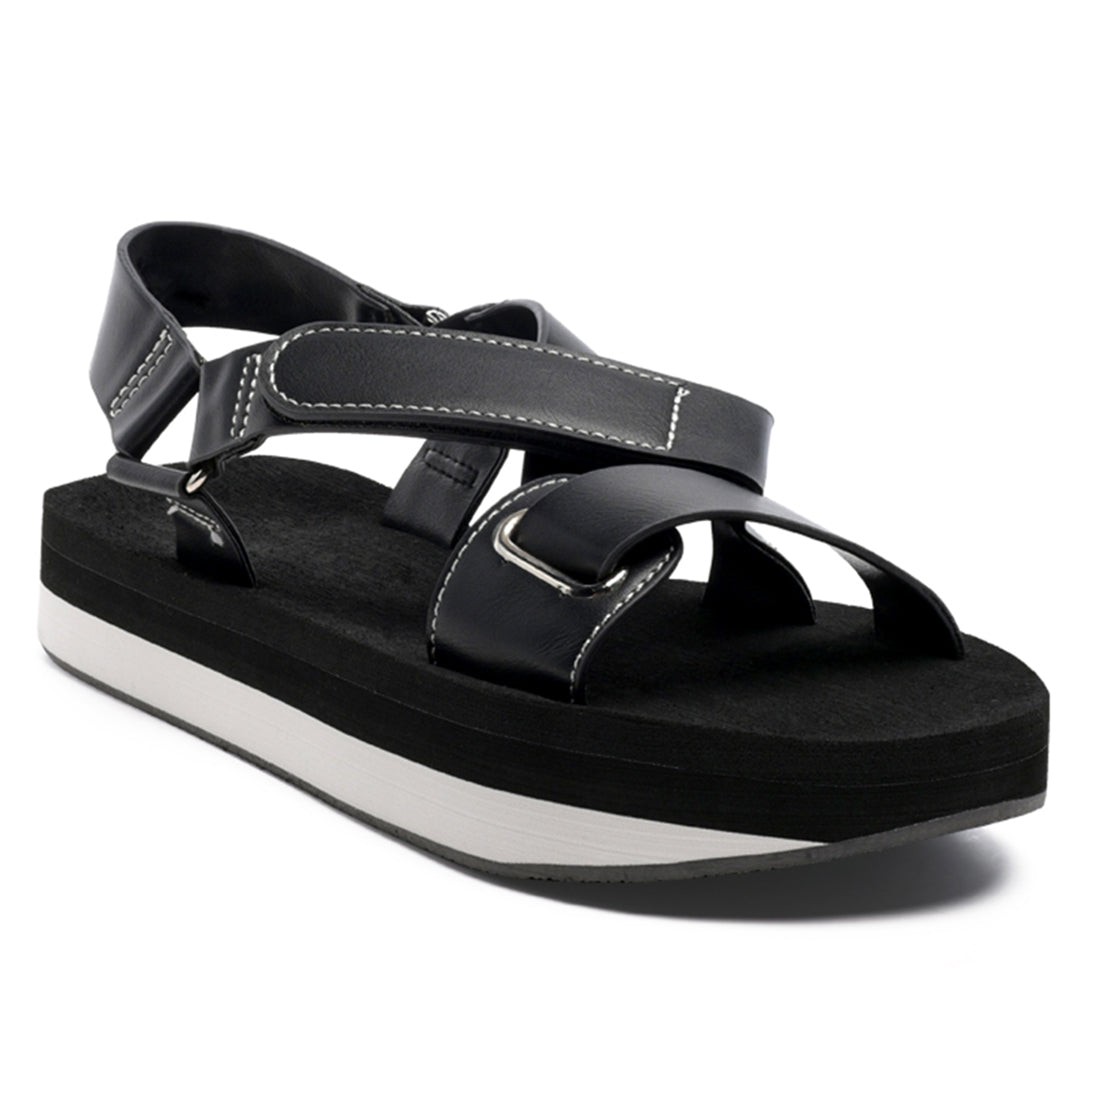 Stay Afloat Platform Sandals in Black - Black